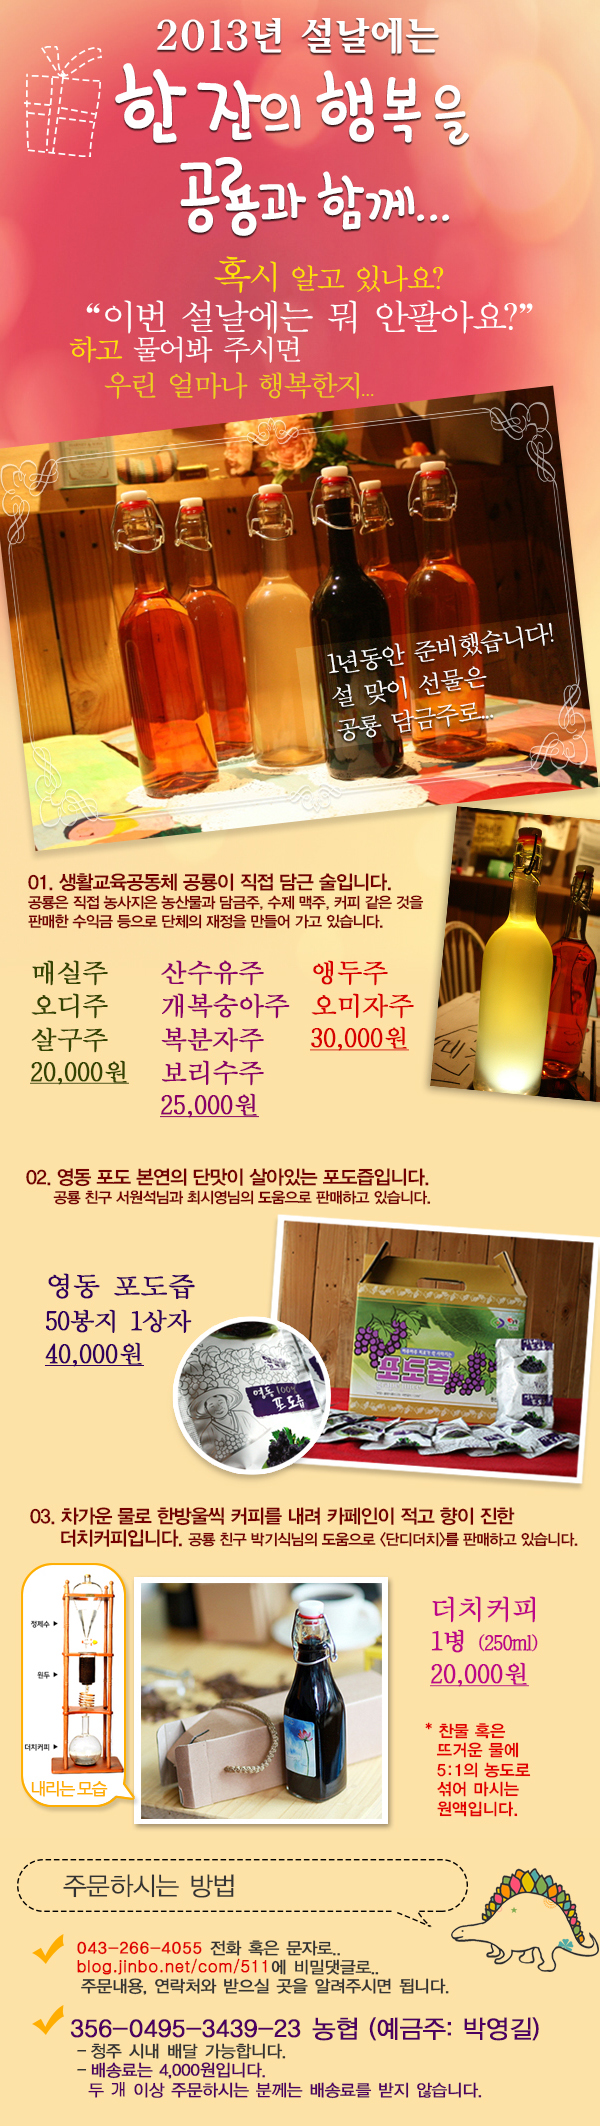 2013 설맞이 물품판매.jpg